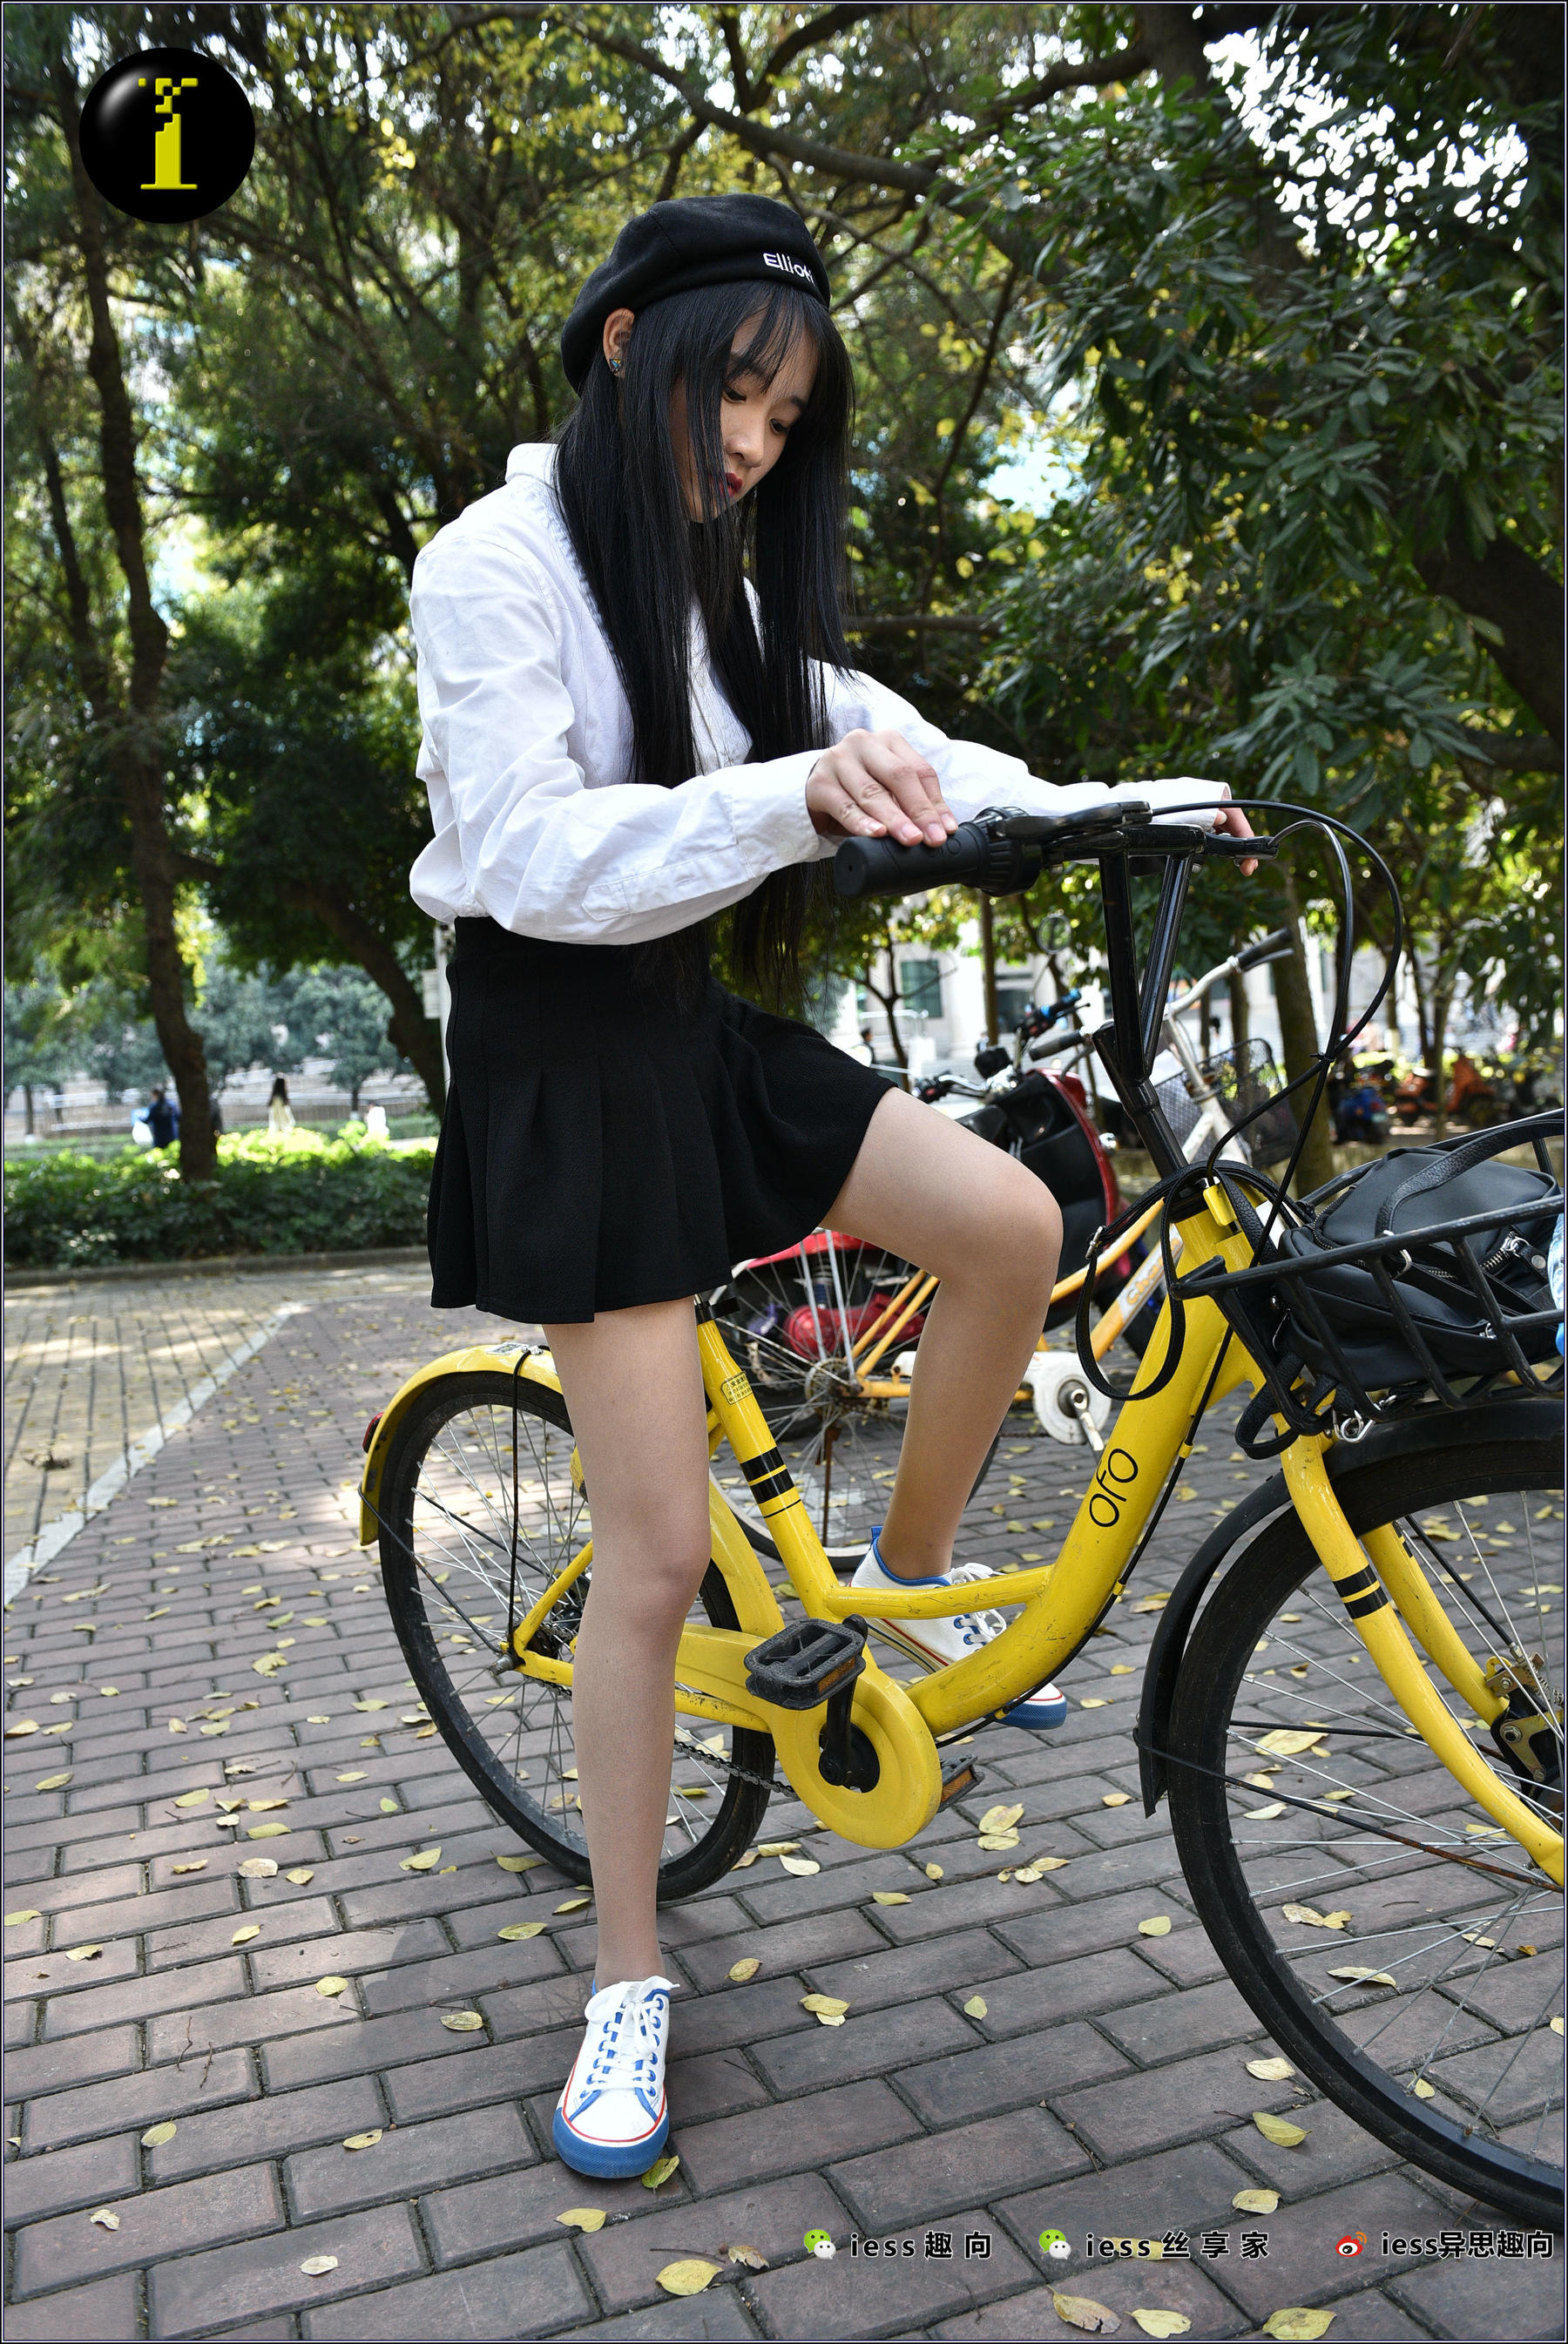 美女自行车-中关村在线摄影论坛